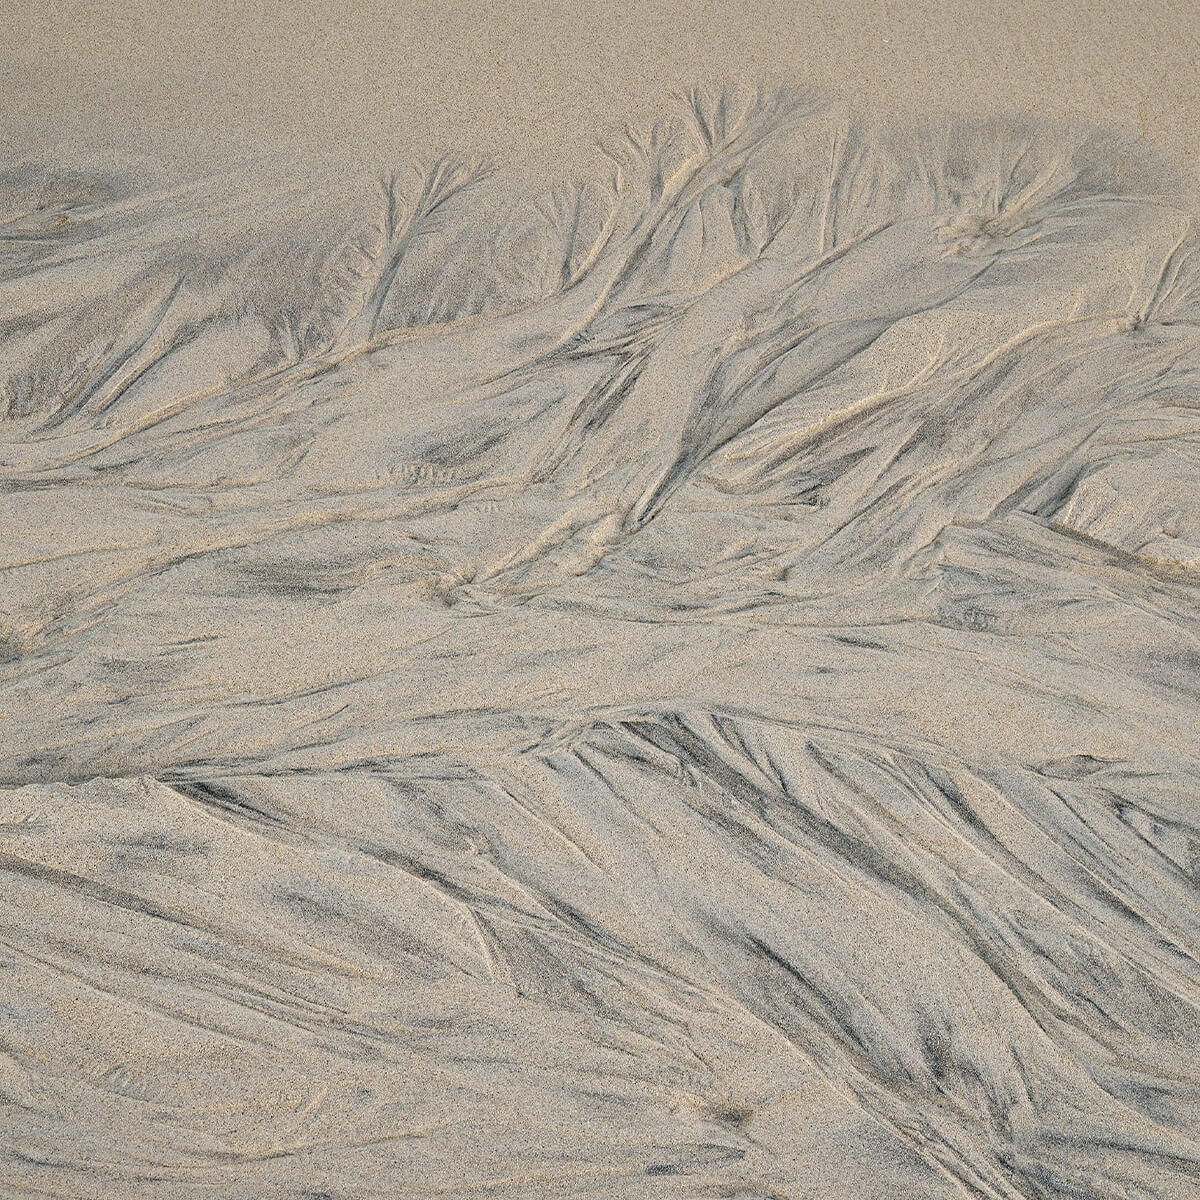 Uneven sand